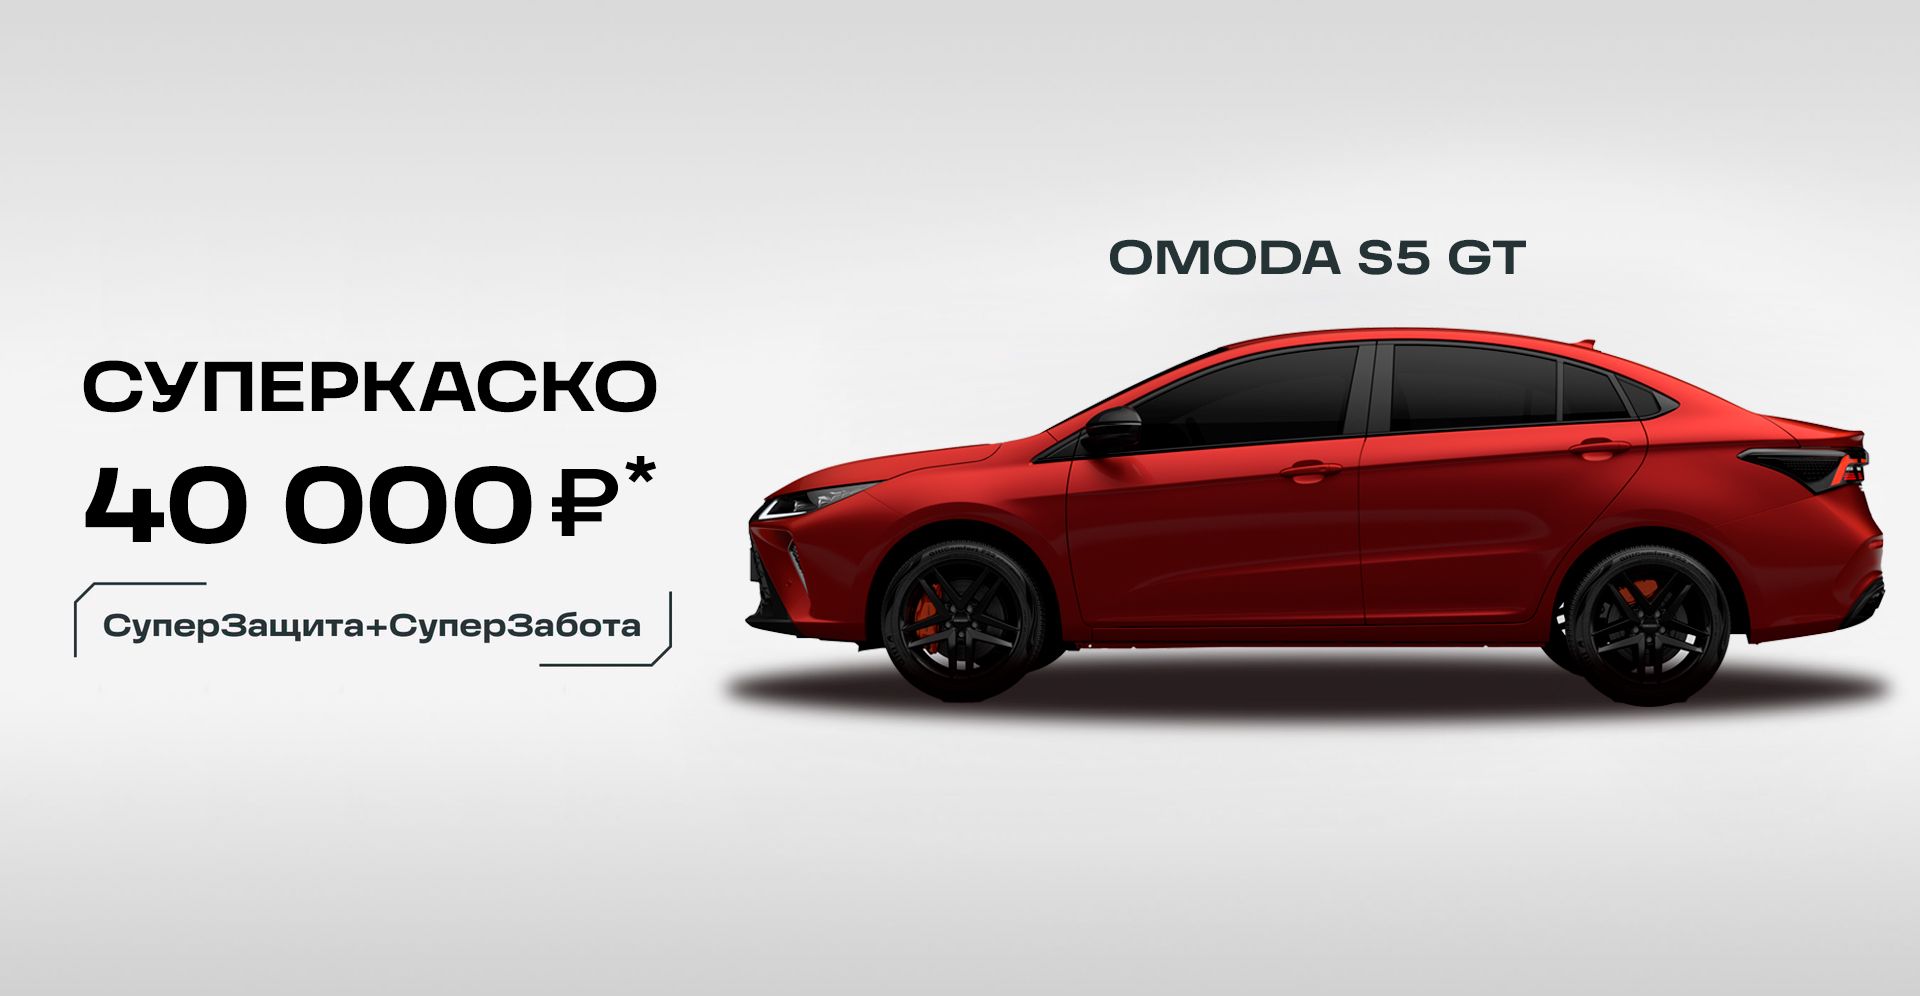 OMODA S5 GT в Самаре, купить автомобиль ОМОДА S5 ГТ 2023-2024 от официального дилера Вип Авто